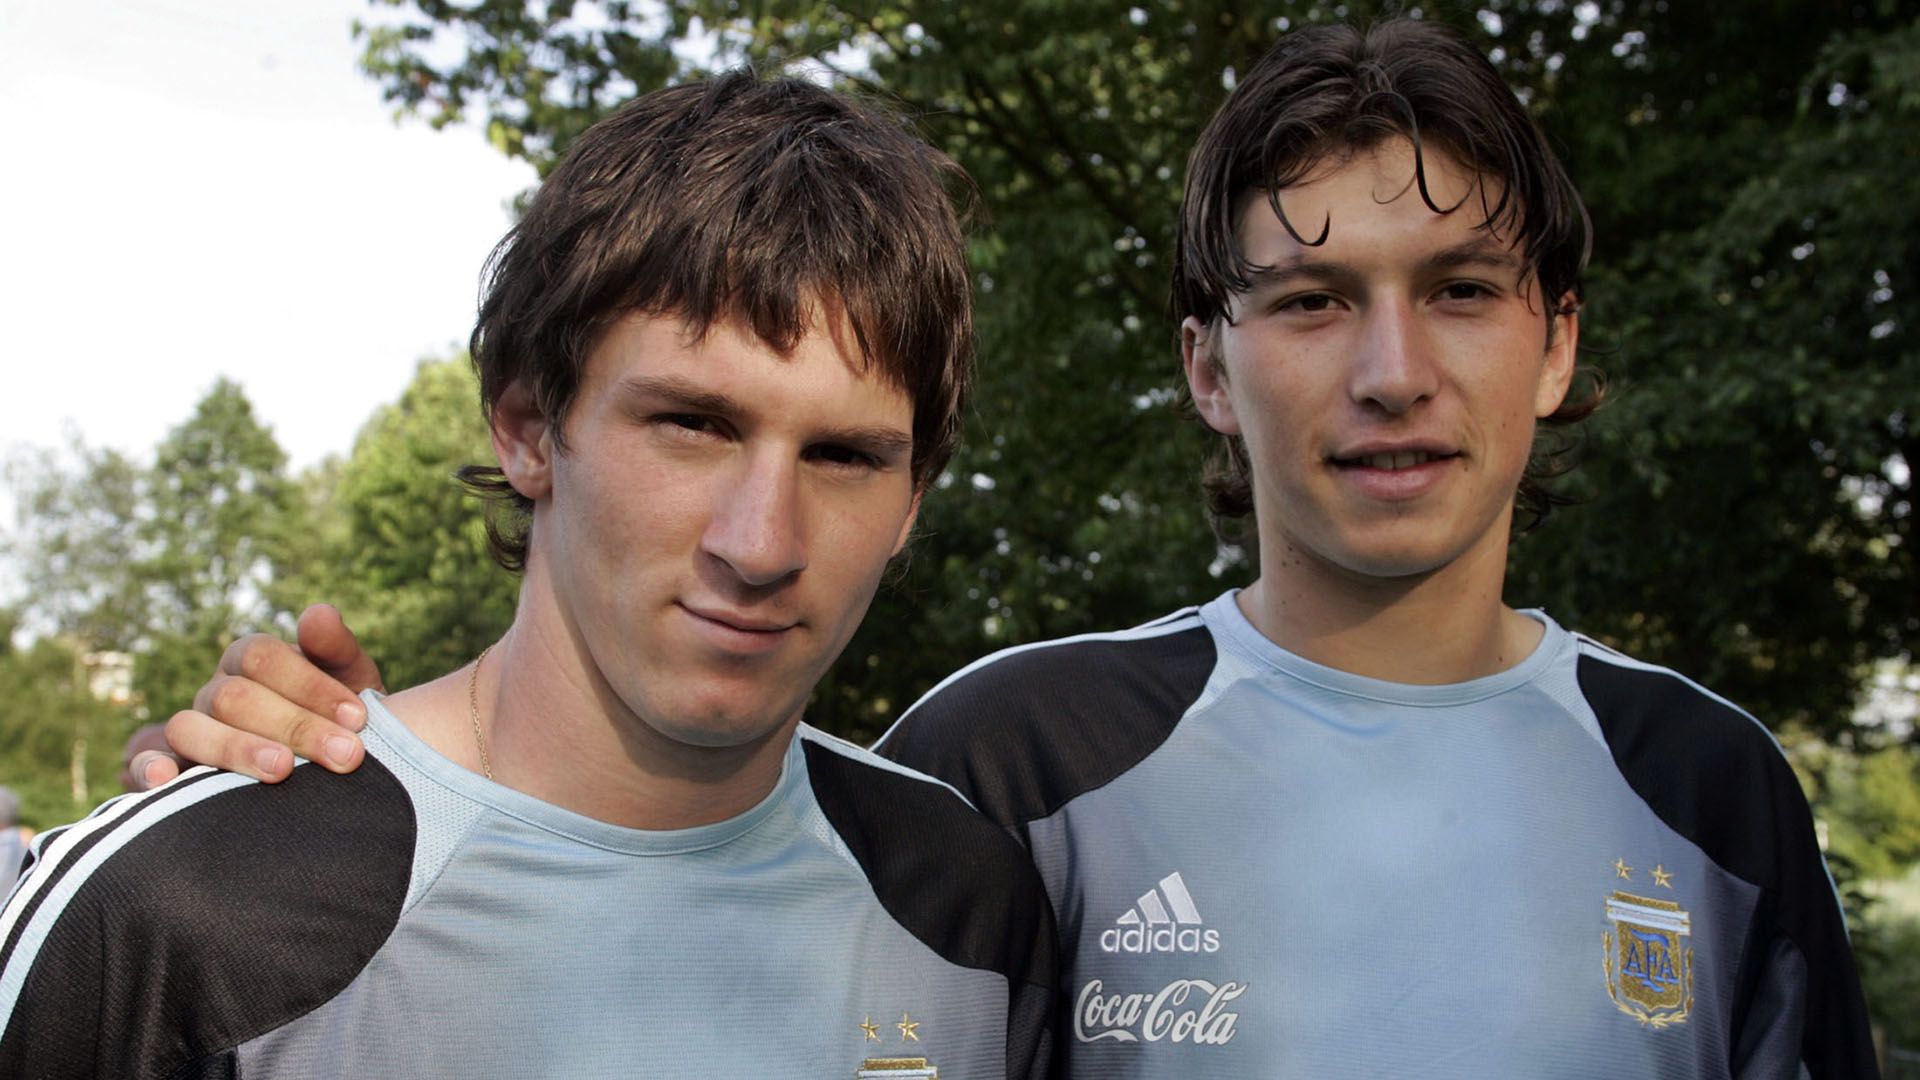 Oberman llegó al Mundial Sub 20 luego de tener una gran temporada en Argentinos Juniors y terminó siendo el compañero de atque de Messi (Foto: Reuters)